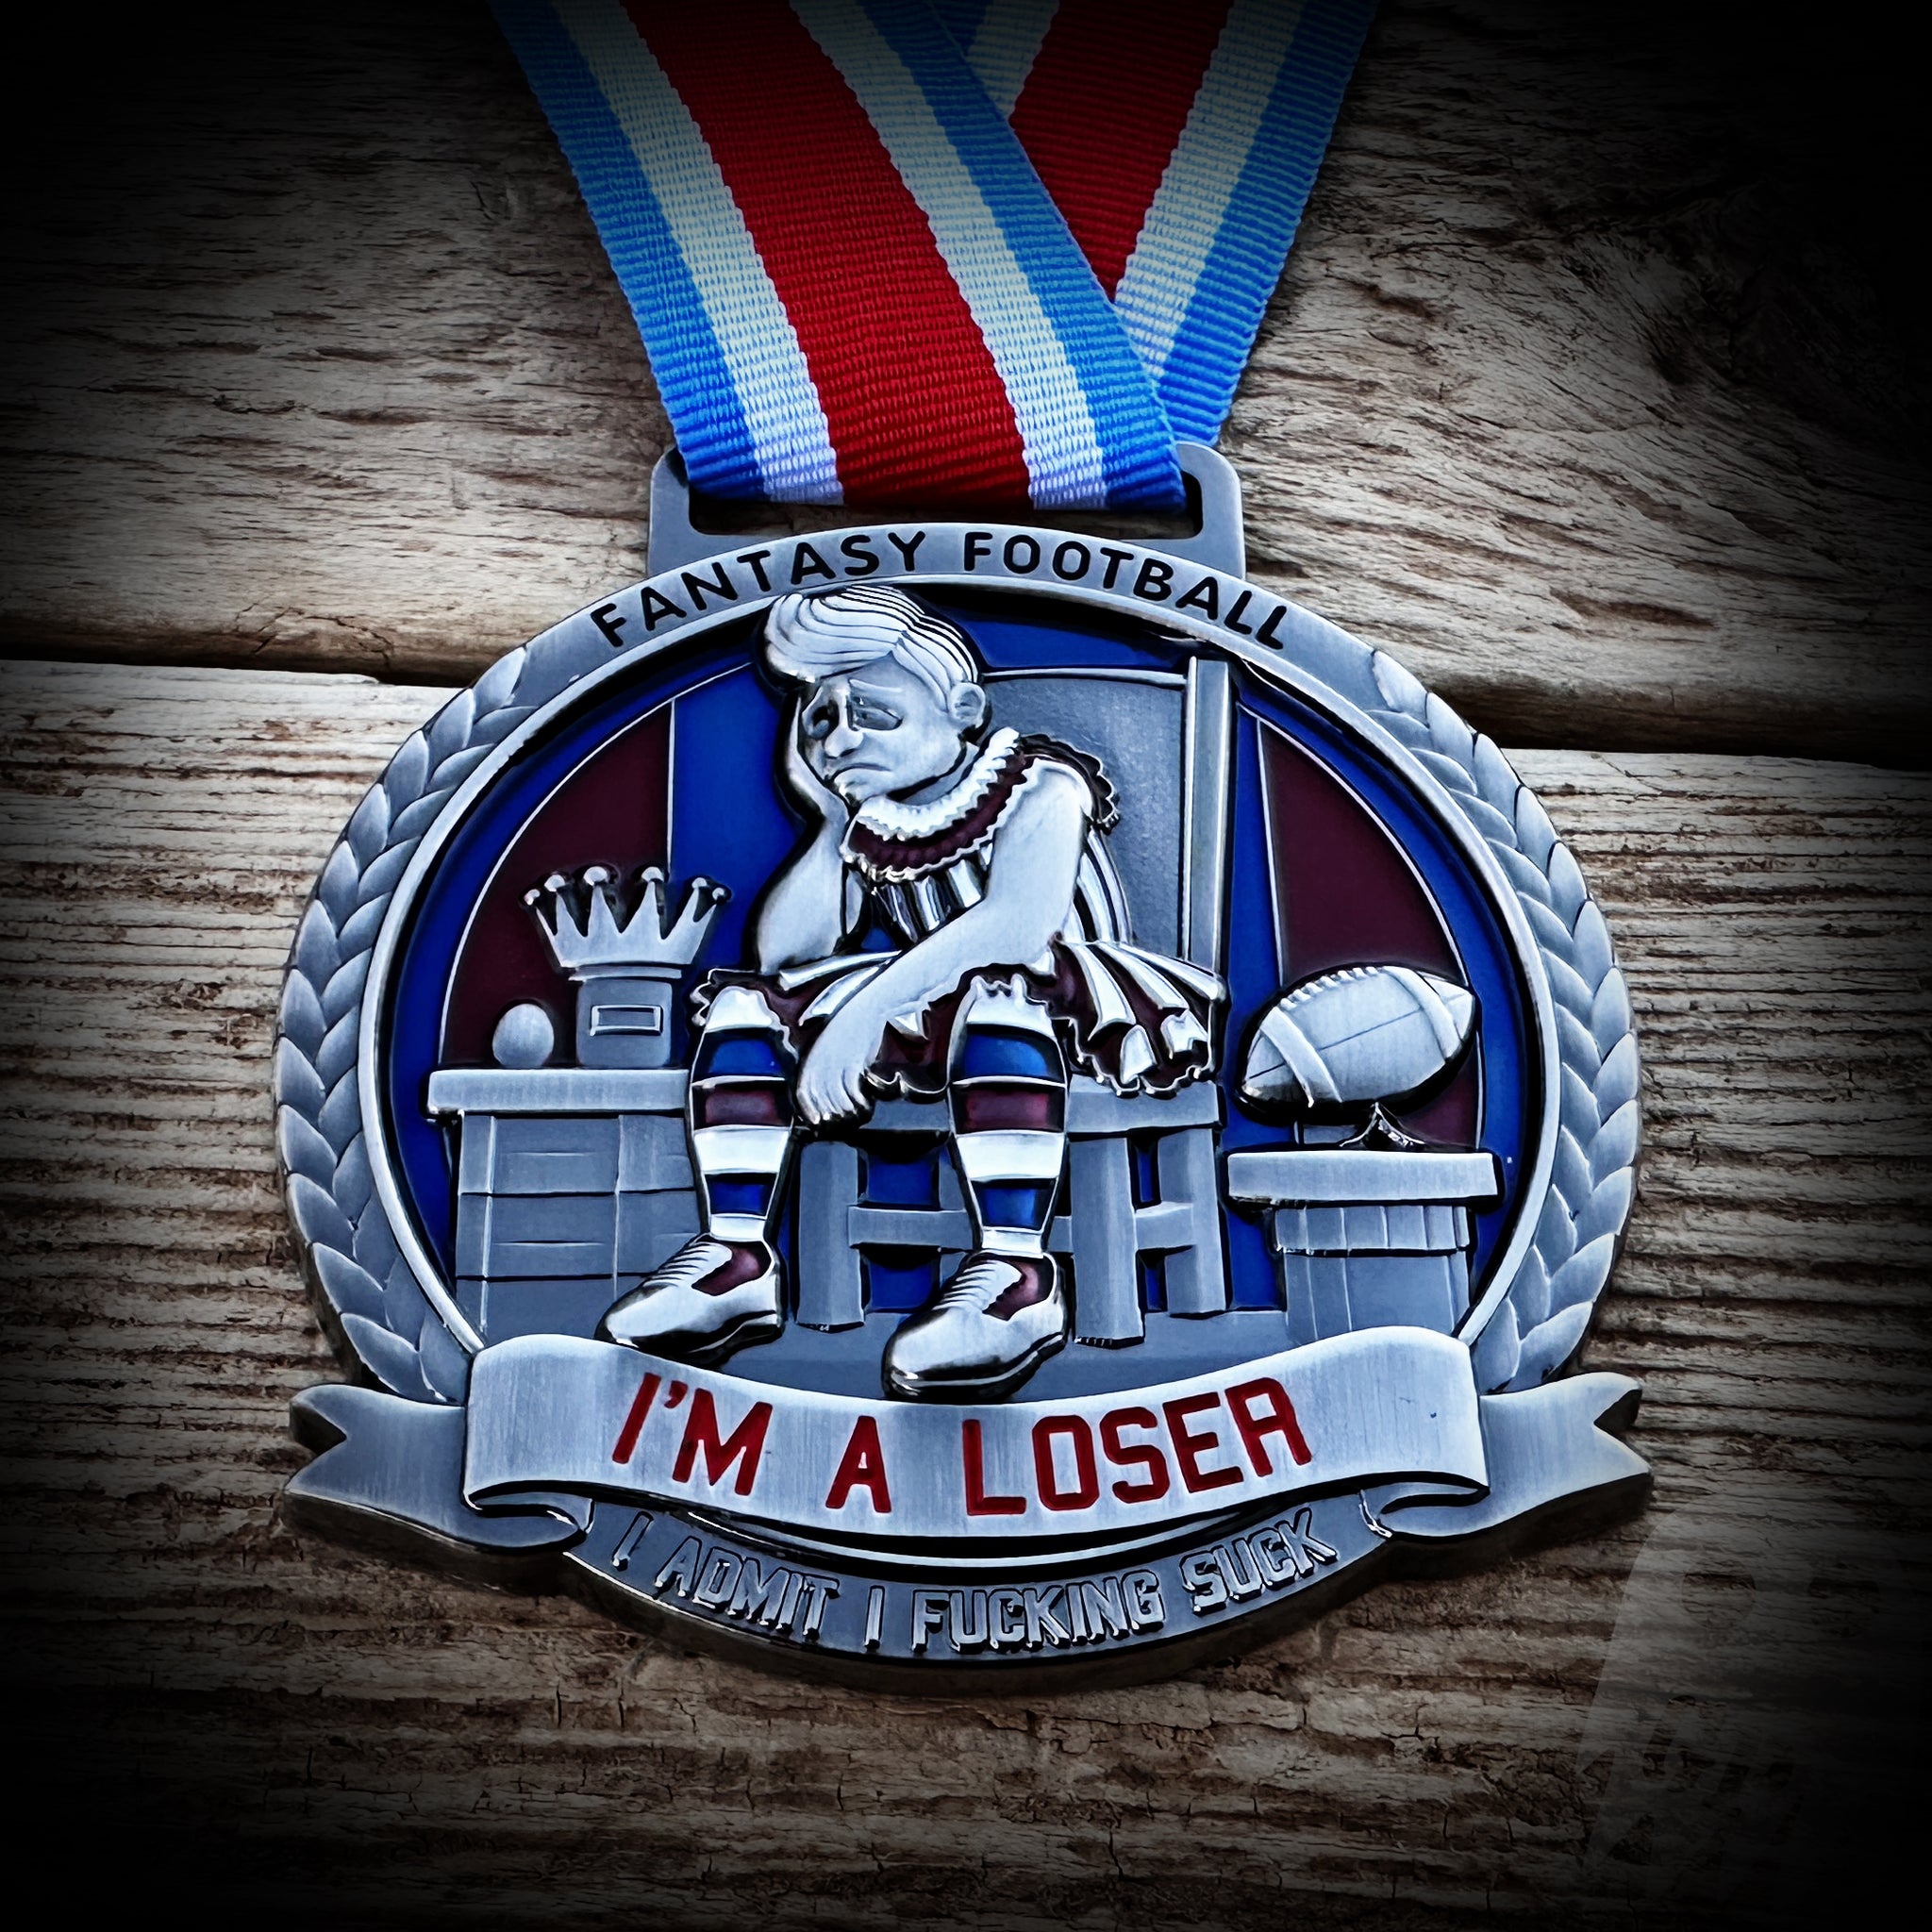 Fantasy Football Loser Award Medal w/ neck ribbon.